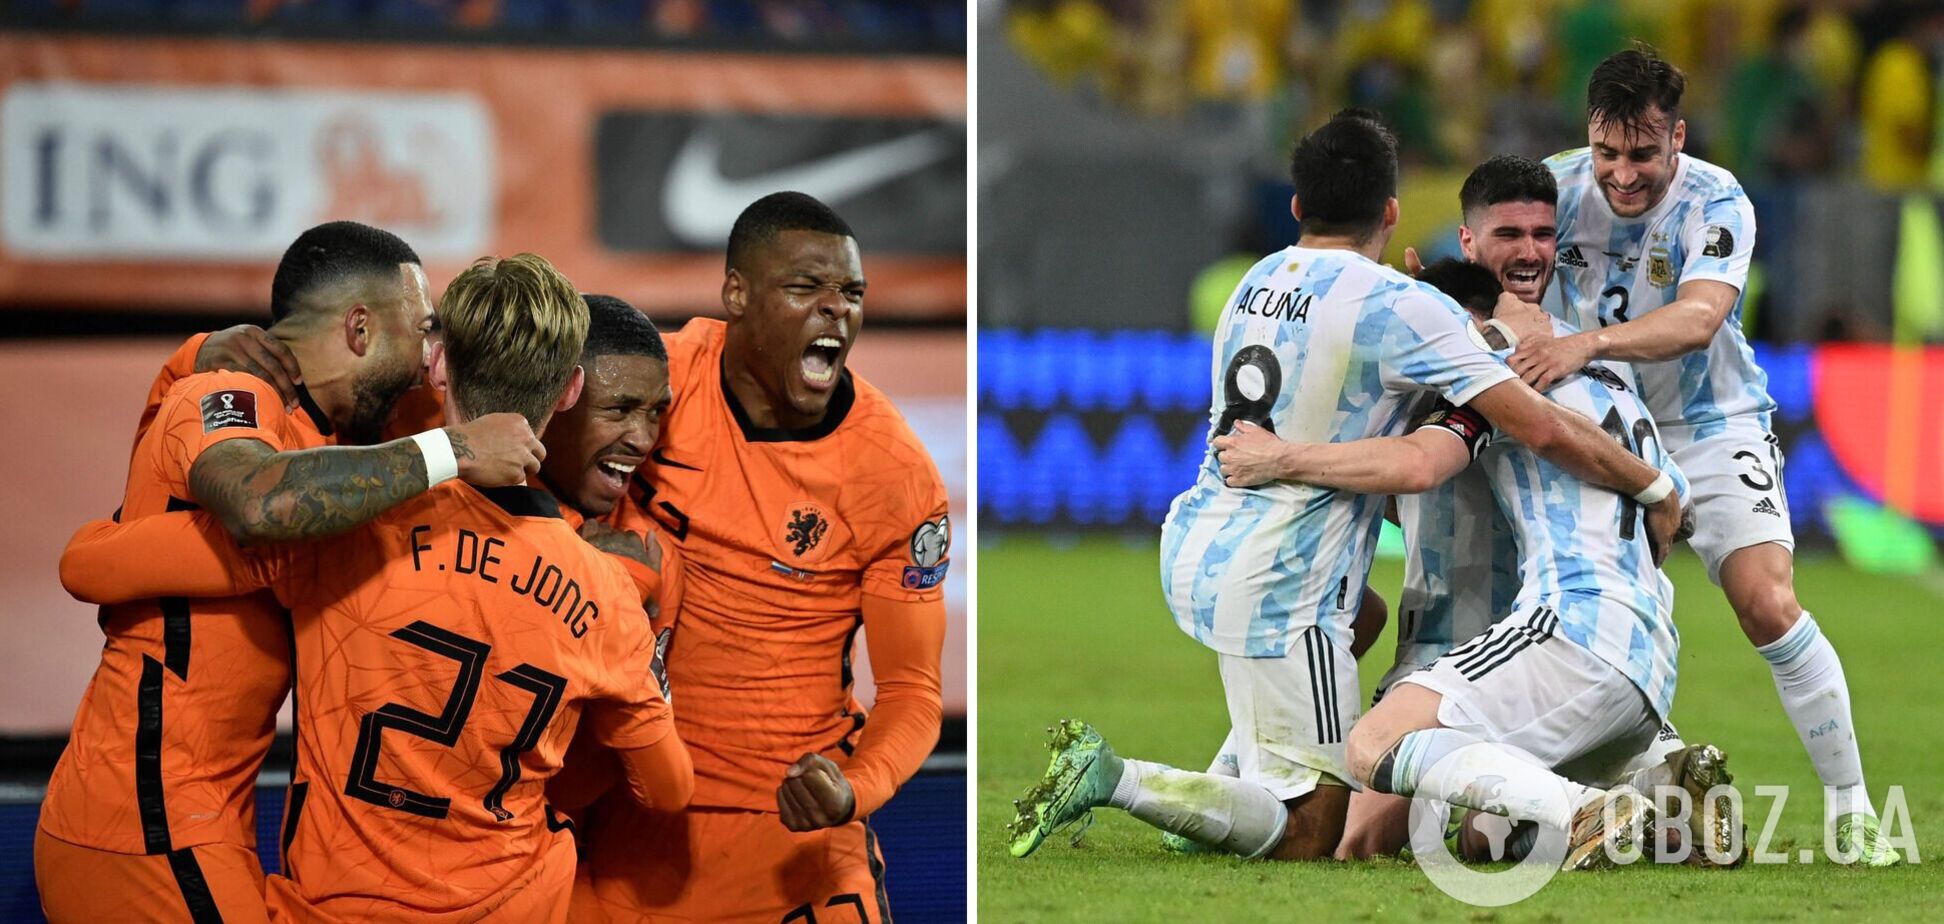 Нідерланди рятують гру з Аргентиною на останній секунді! Онлайн-трансляція 1/4 фіналу ЧС-2022. LIVE